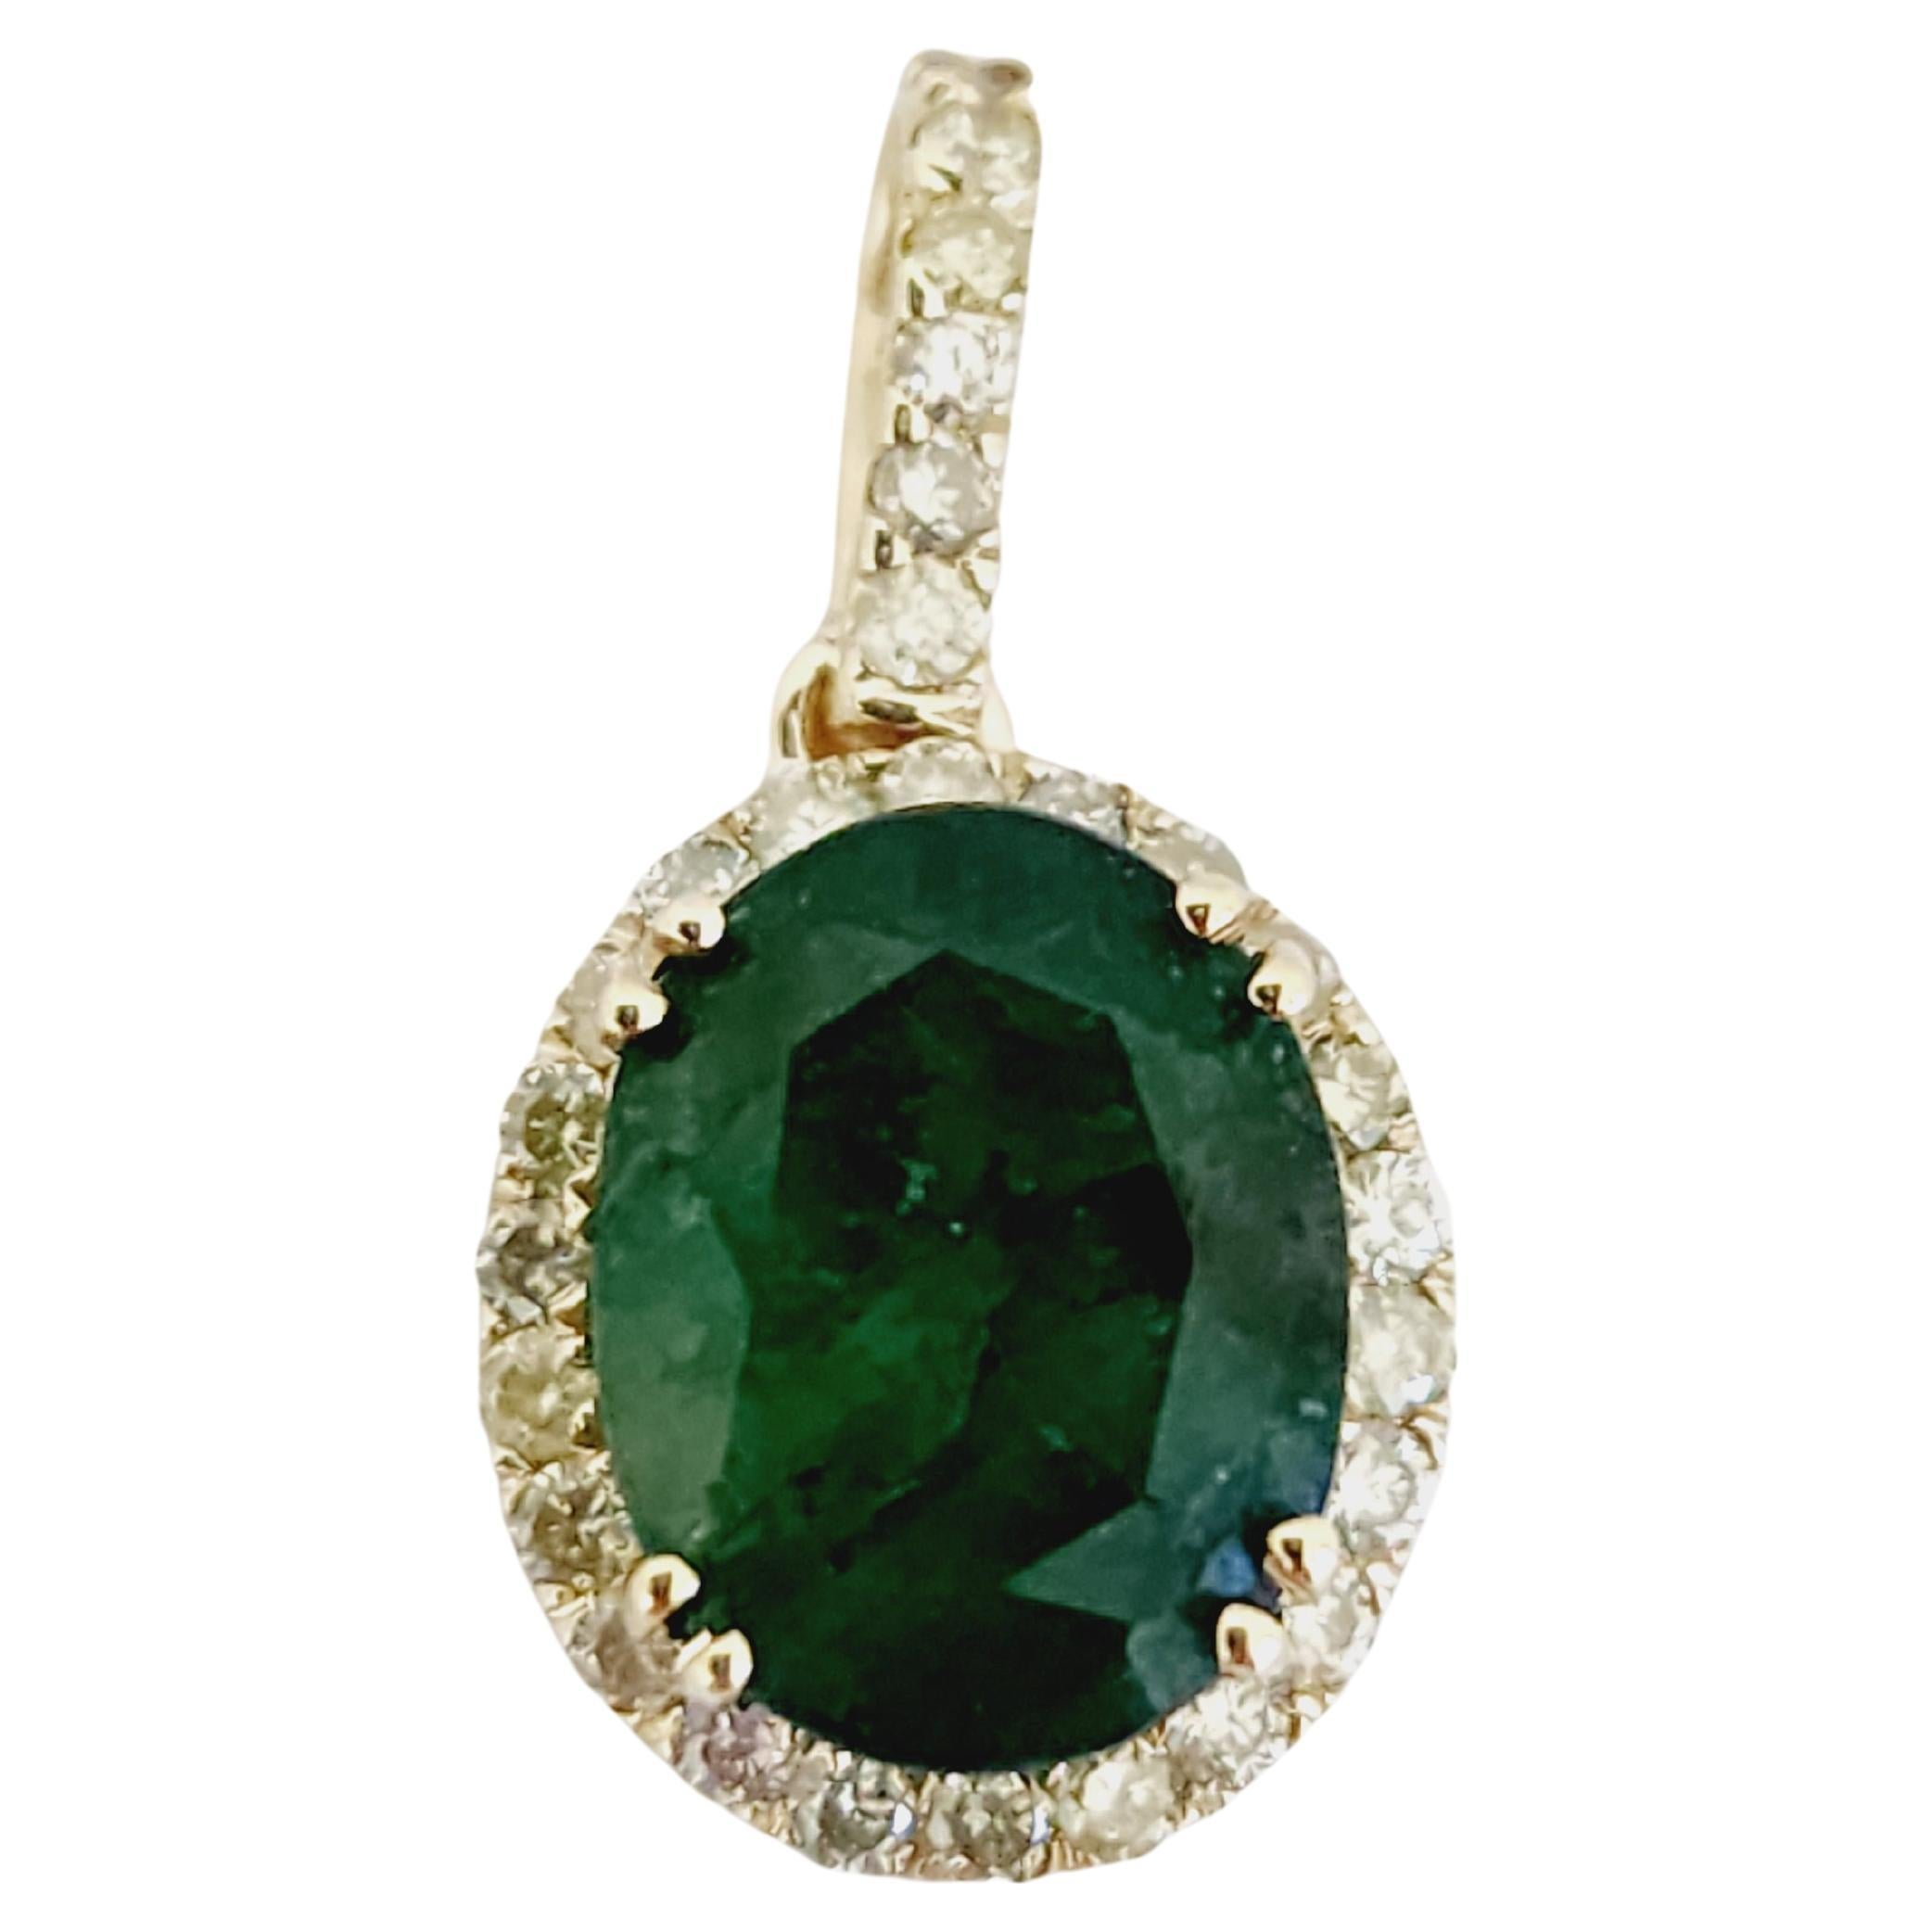 2.90 Carats Natural Emerald Diamond Pendant Yellow Gold 14 Karat For Sale